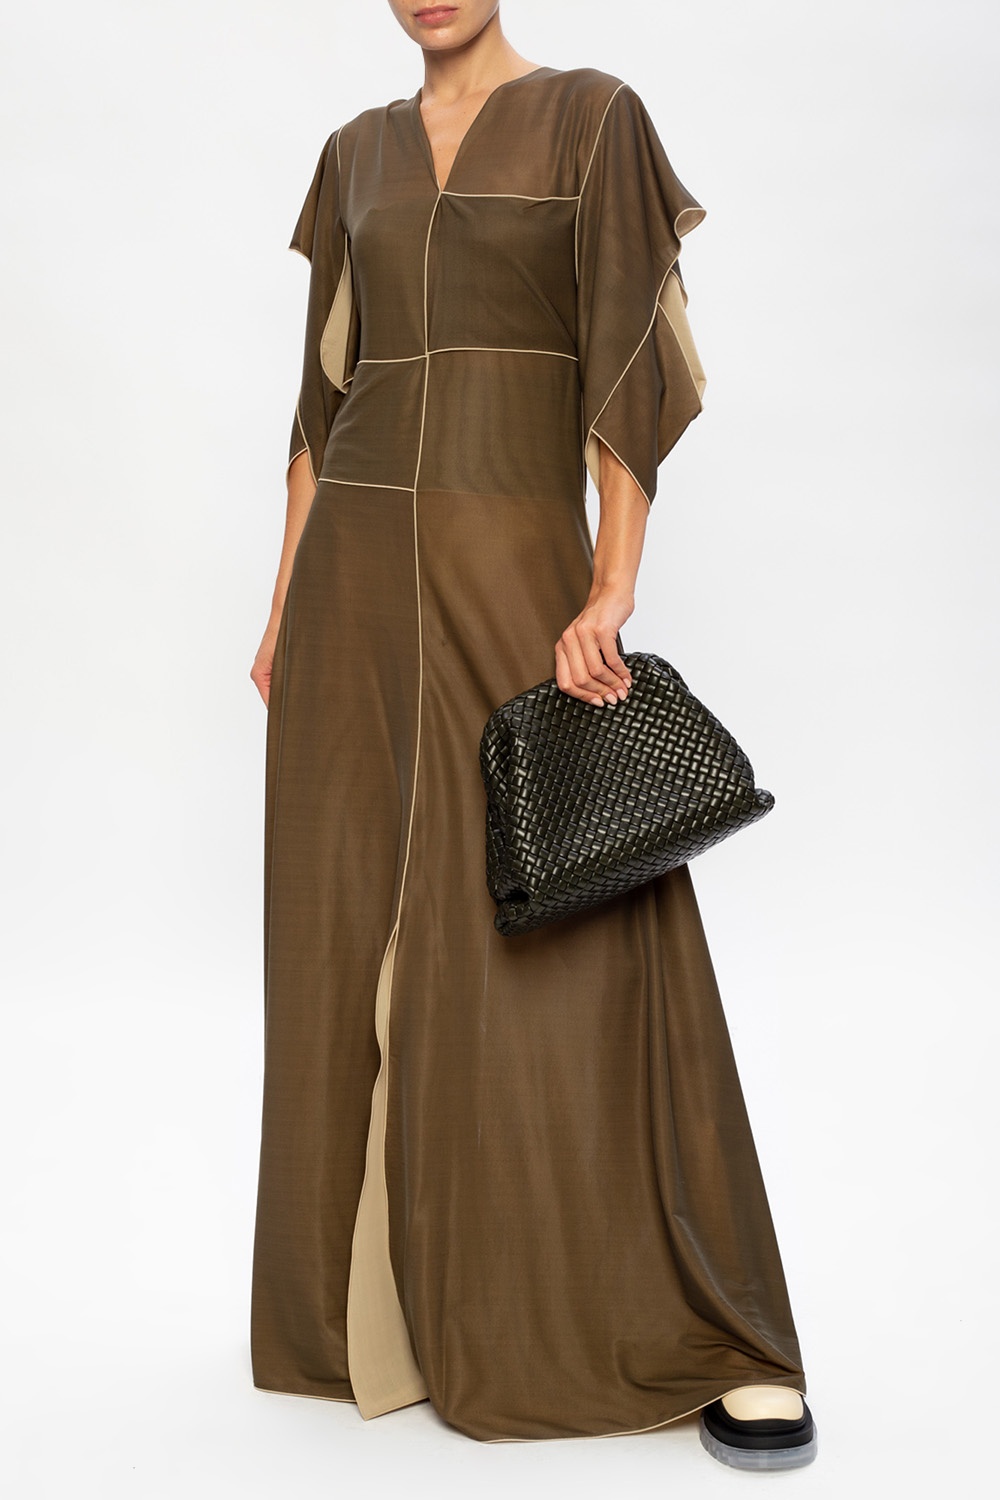 Bottega Veneta ‘Intrecciato’ motif dress